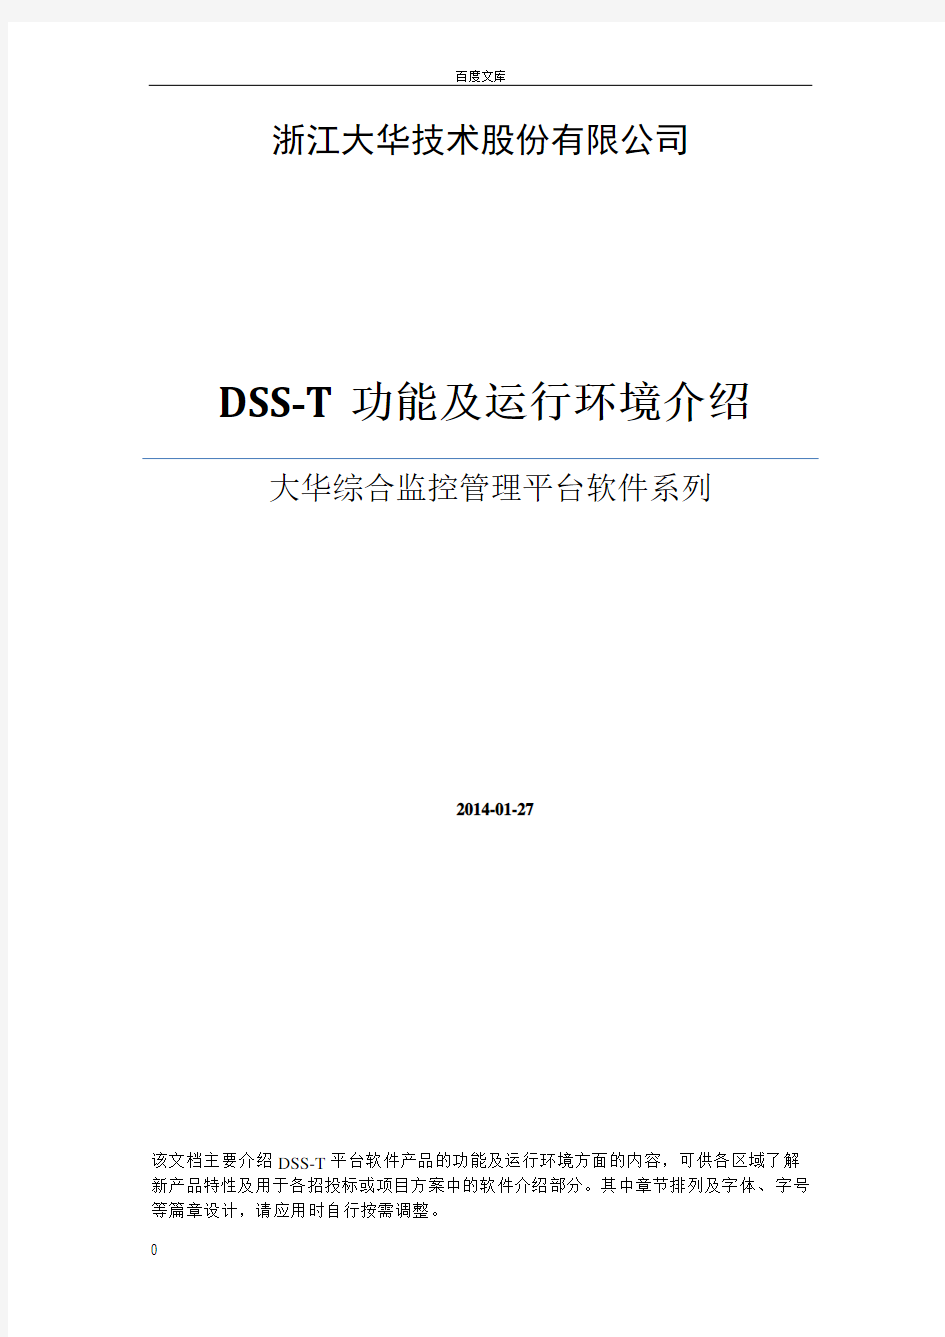 大华综合监控管理平台软件(DSST)功能和环境描述(方案用)